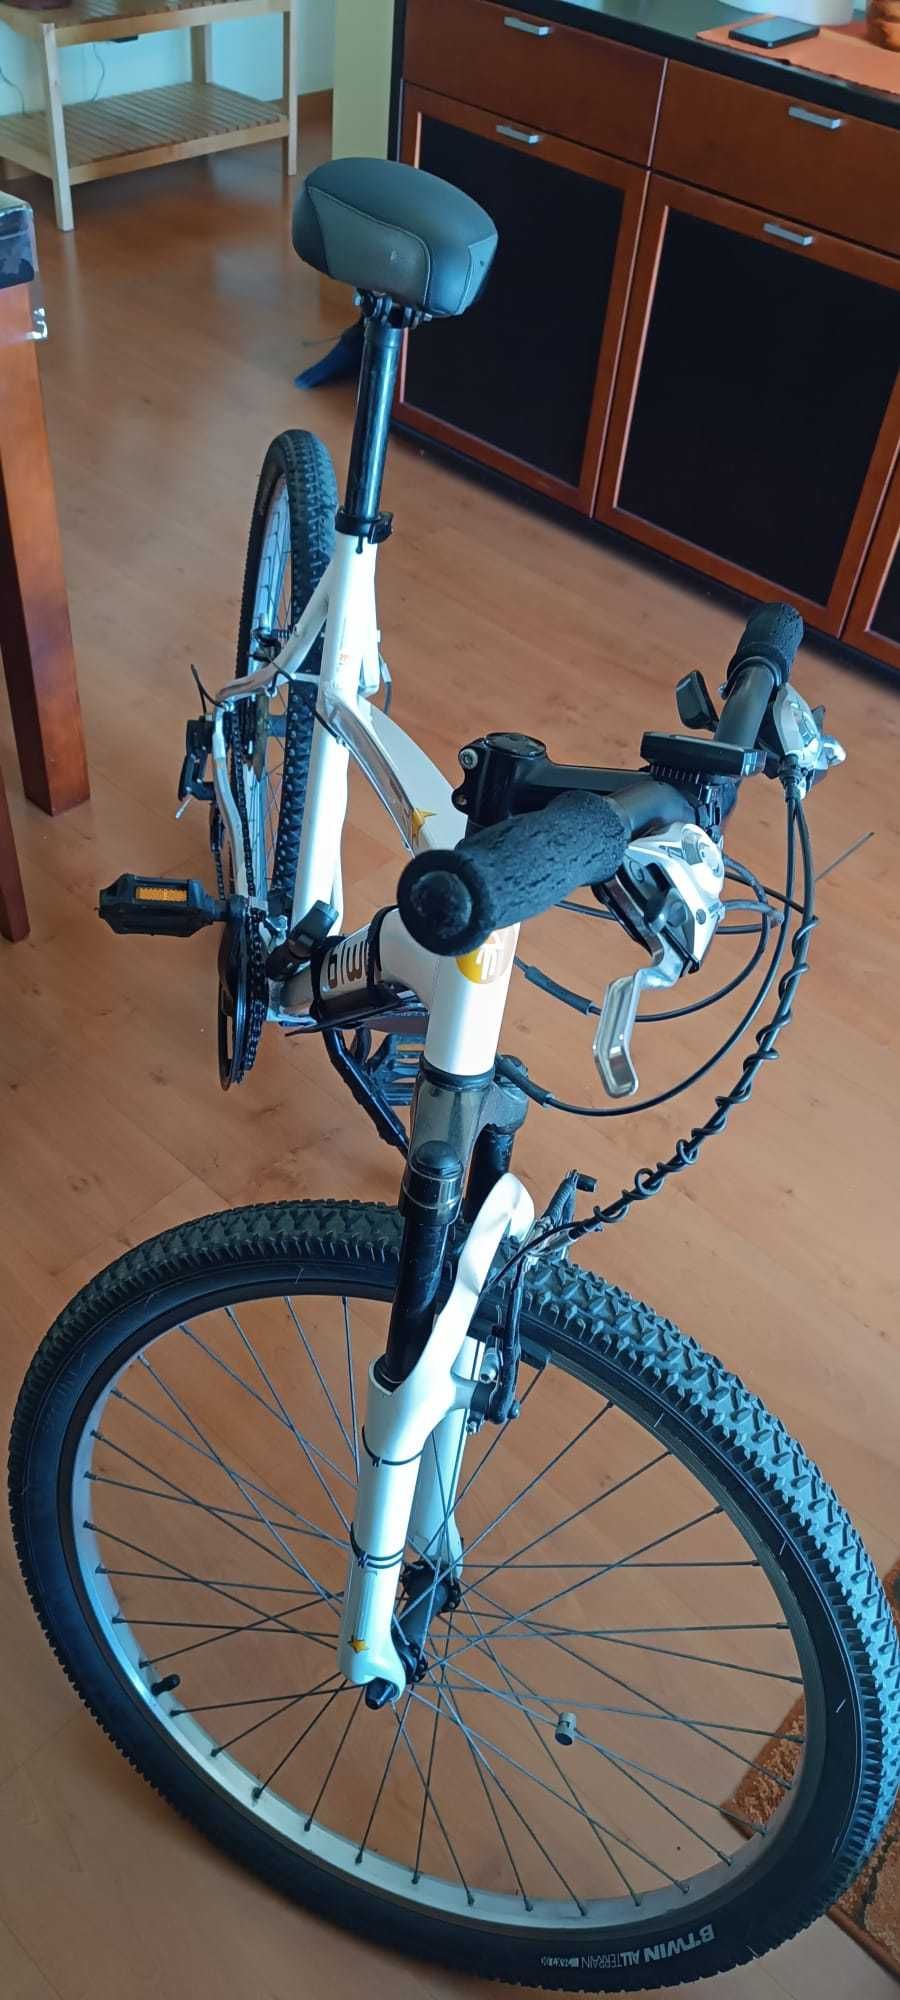 Bicicleta Rockrider 5.1  com accesorios inclusos